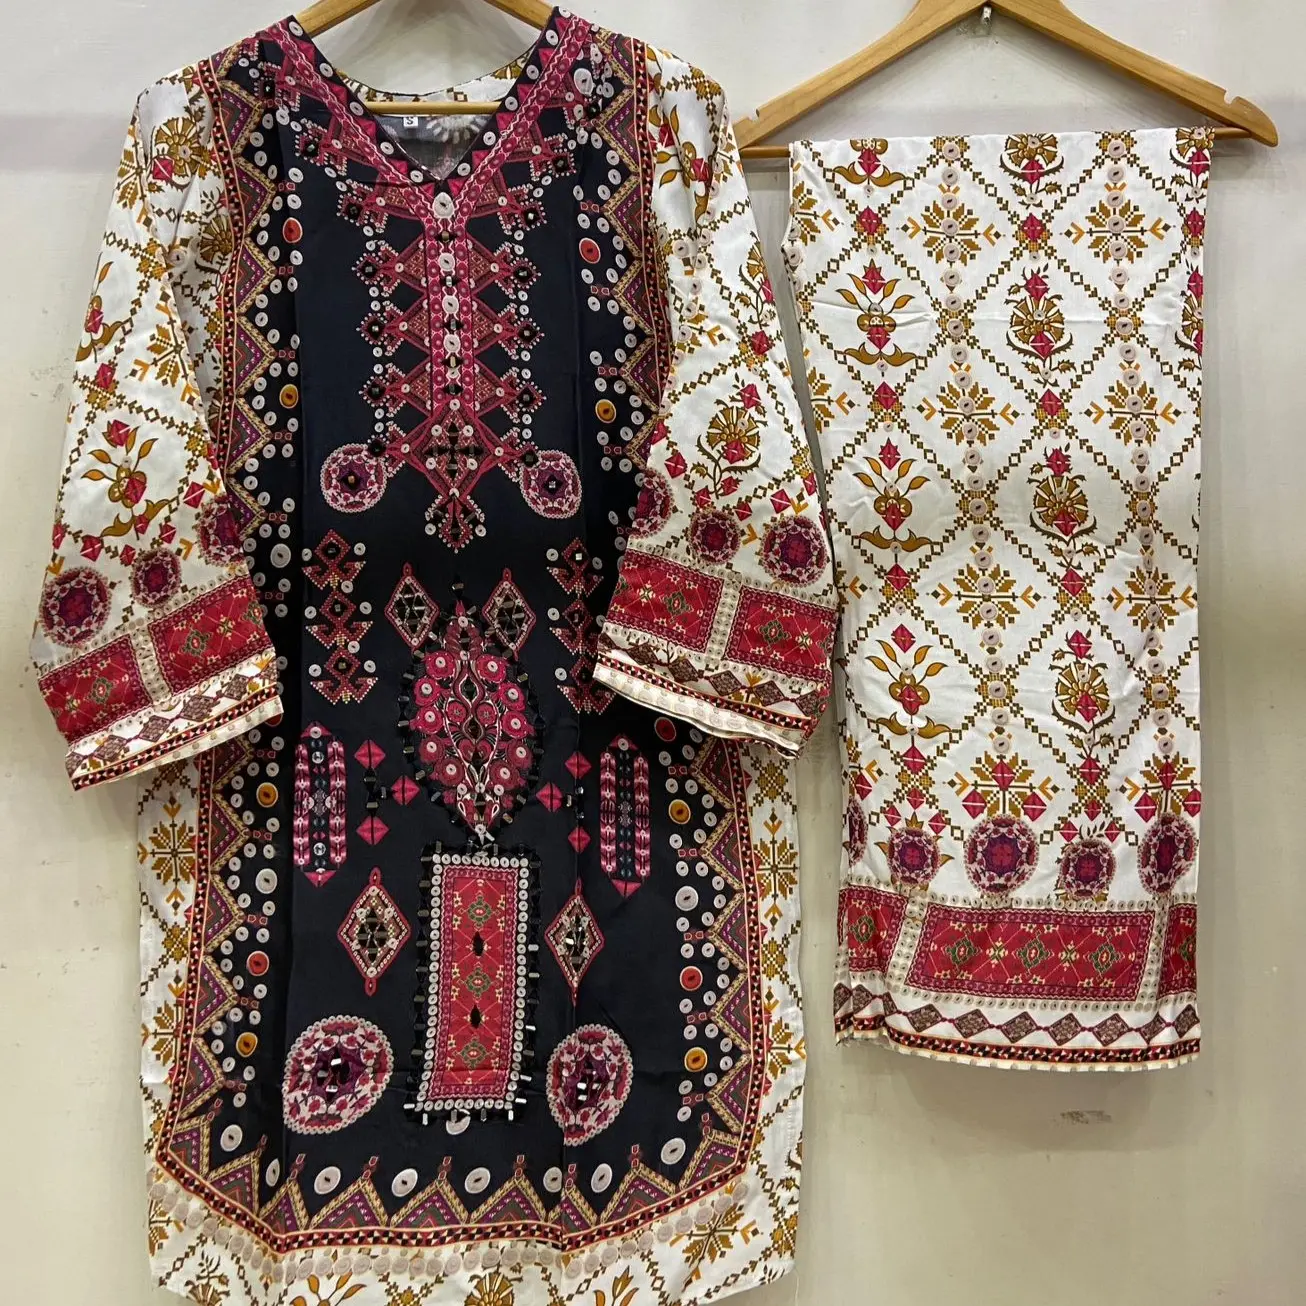 Kadınlar için Embroidered wear işlemeli Cortrai yüksek kalite Kurtis hindistan'da kadınlar için toptan fiyatlar \ Kurtis şık tasarımlar